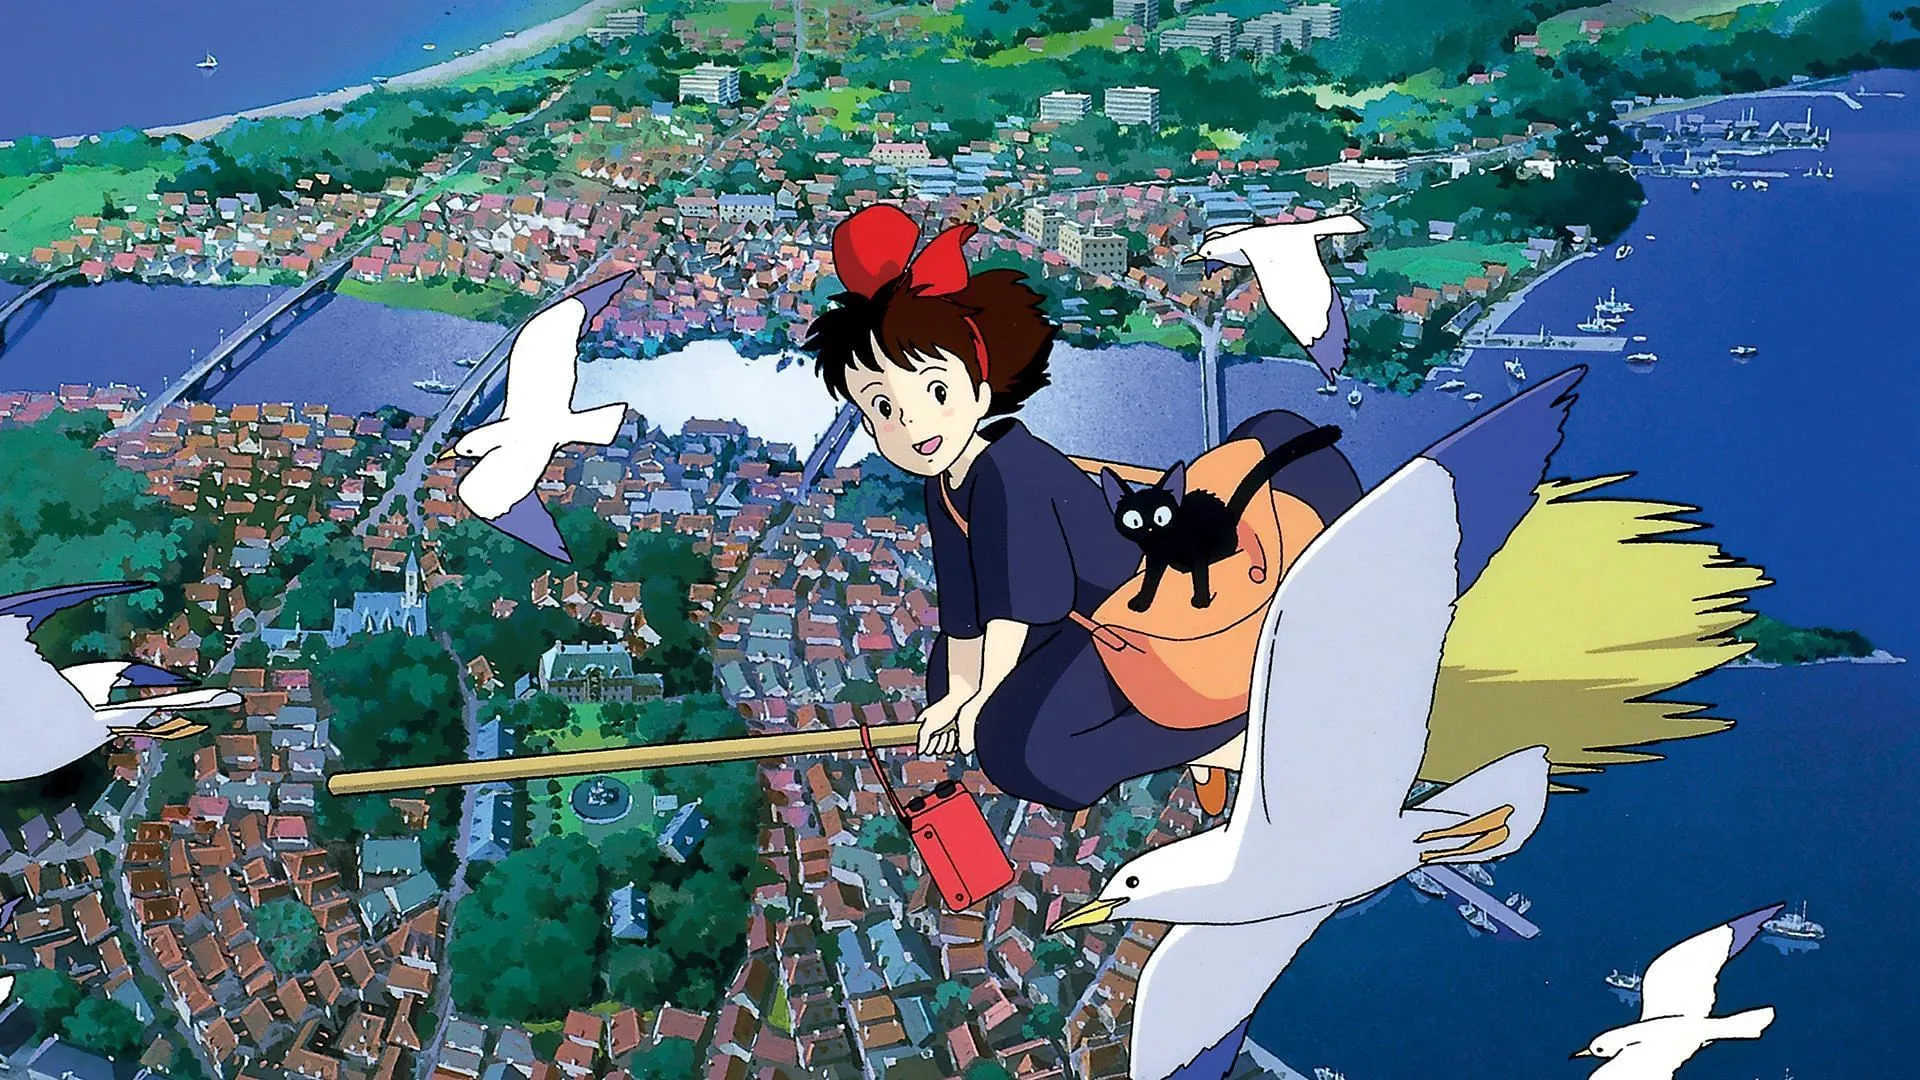 Il servizio di consegna di Kiki (immagine tramite Studio Ghibli)